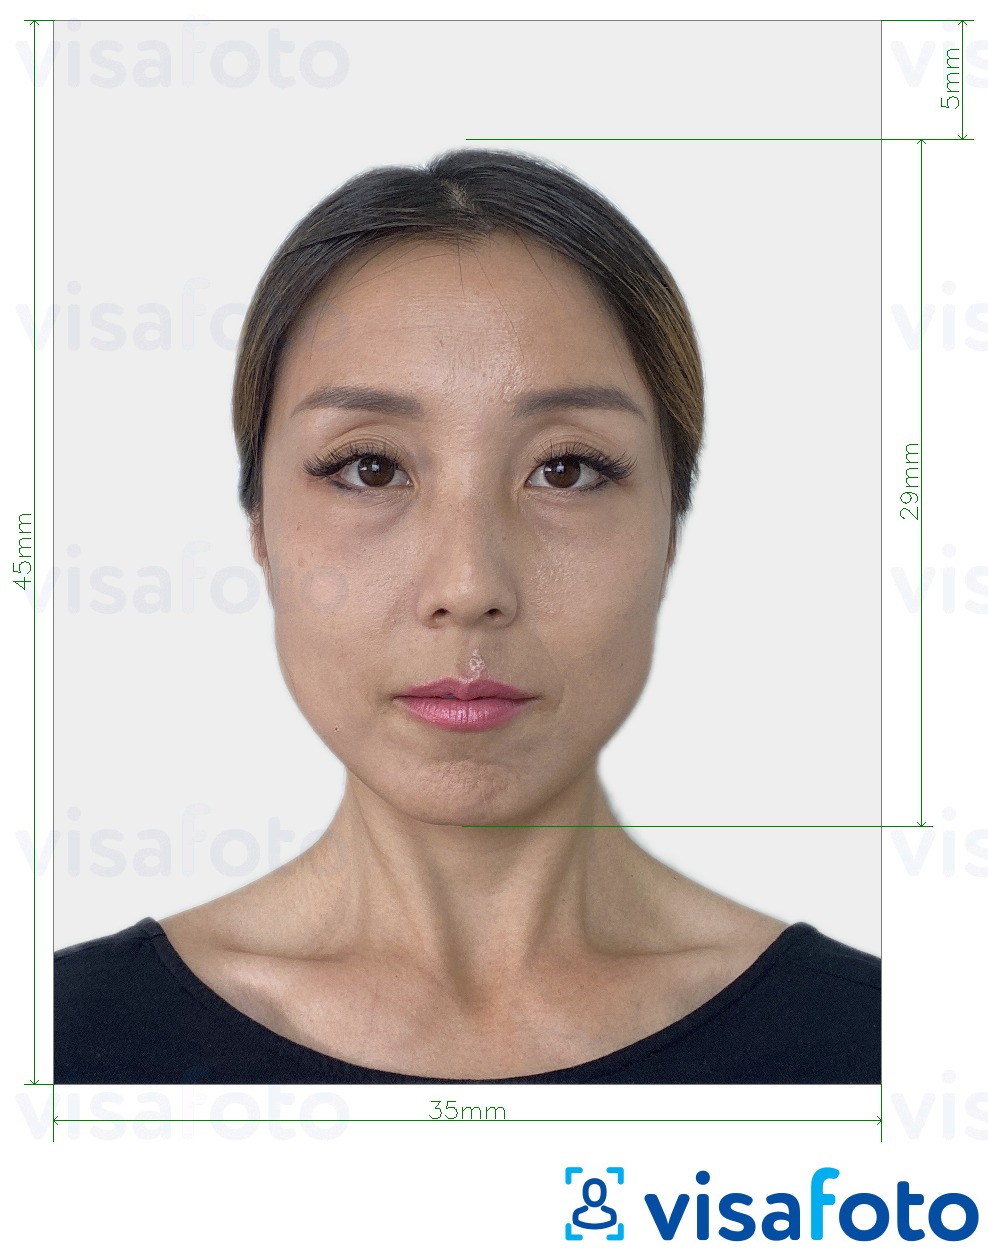 نمونه ی یک عکس برای پاسپورت ژاپن 35x45 میلیمتر با مشخصات دقیق